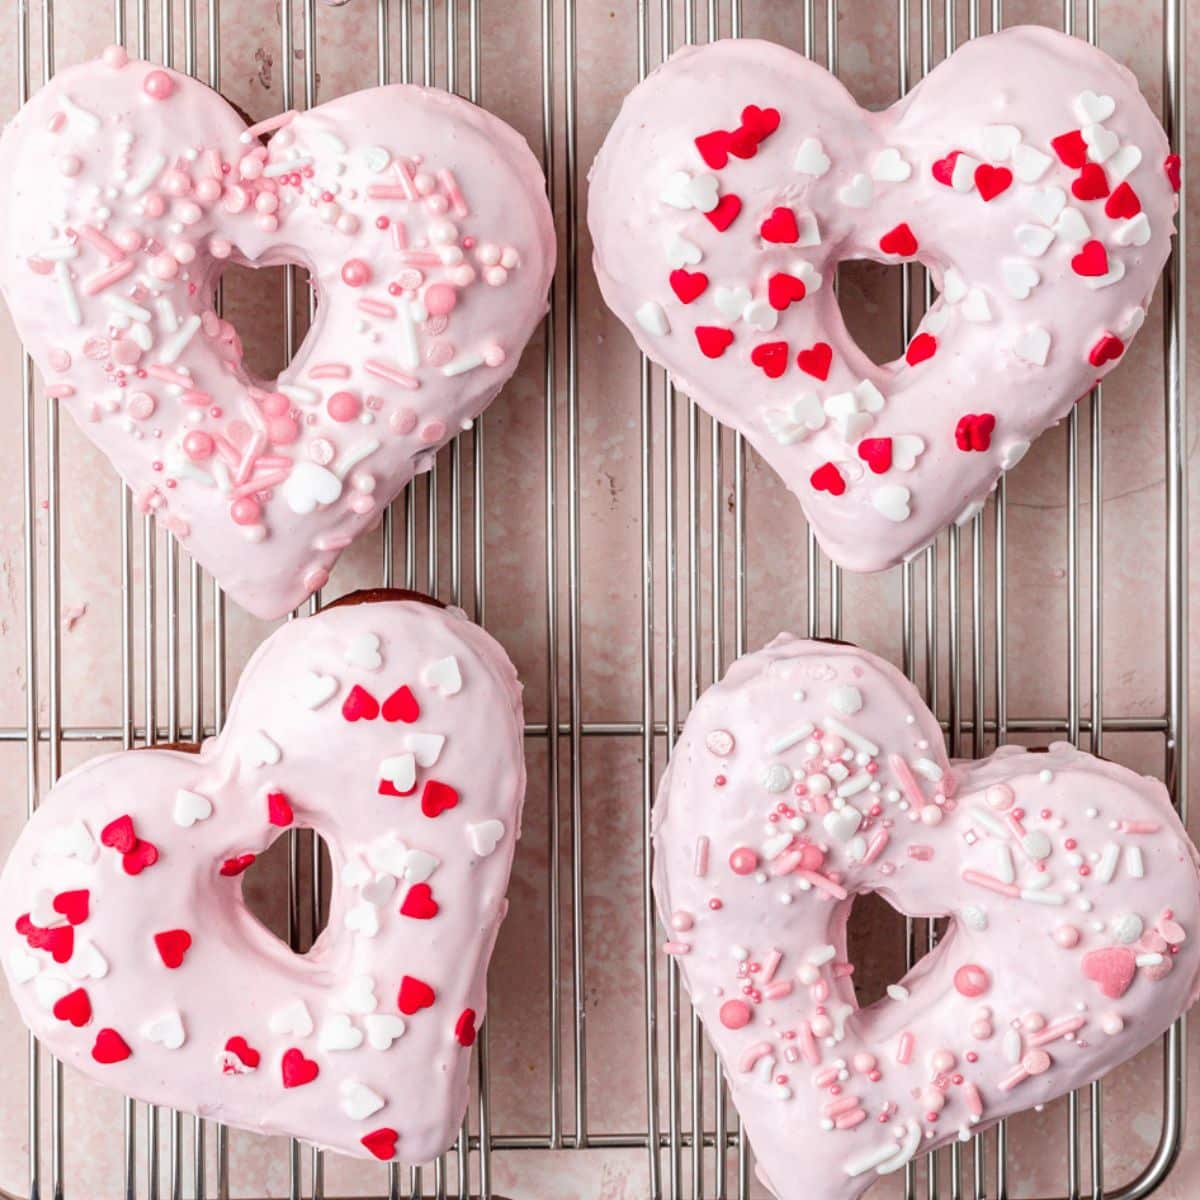 close up shot of heart shaped donuts.